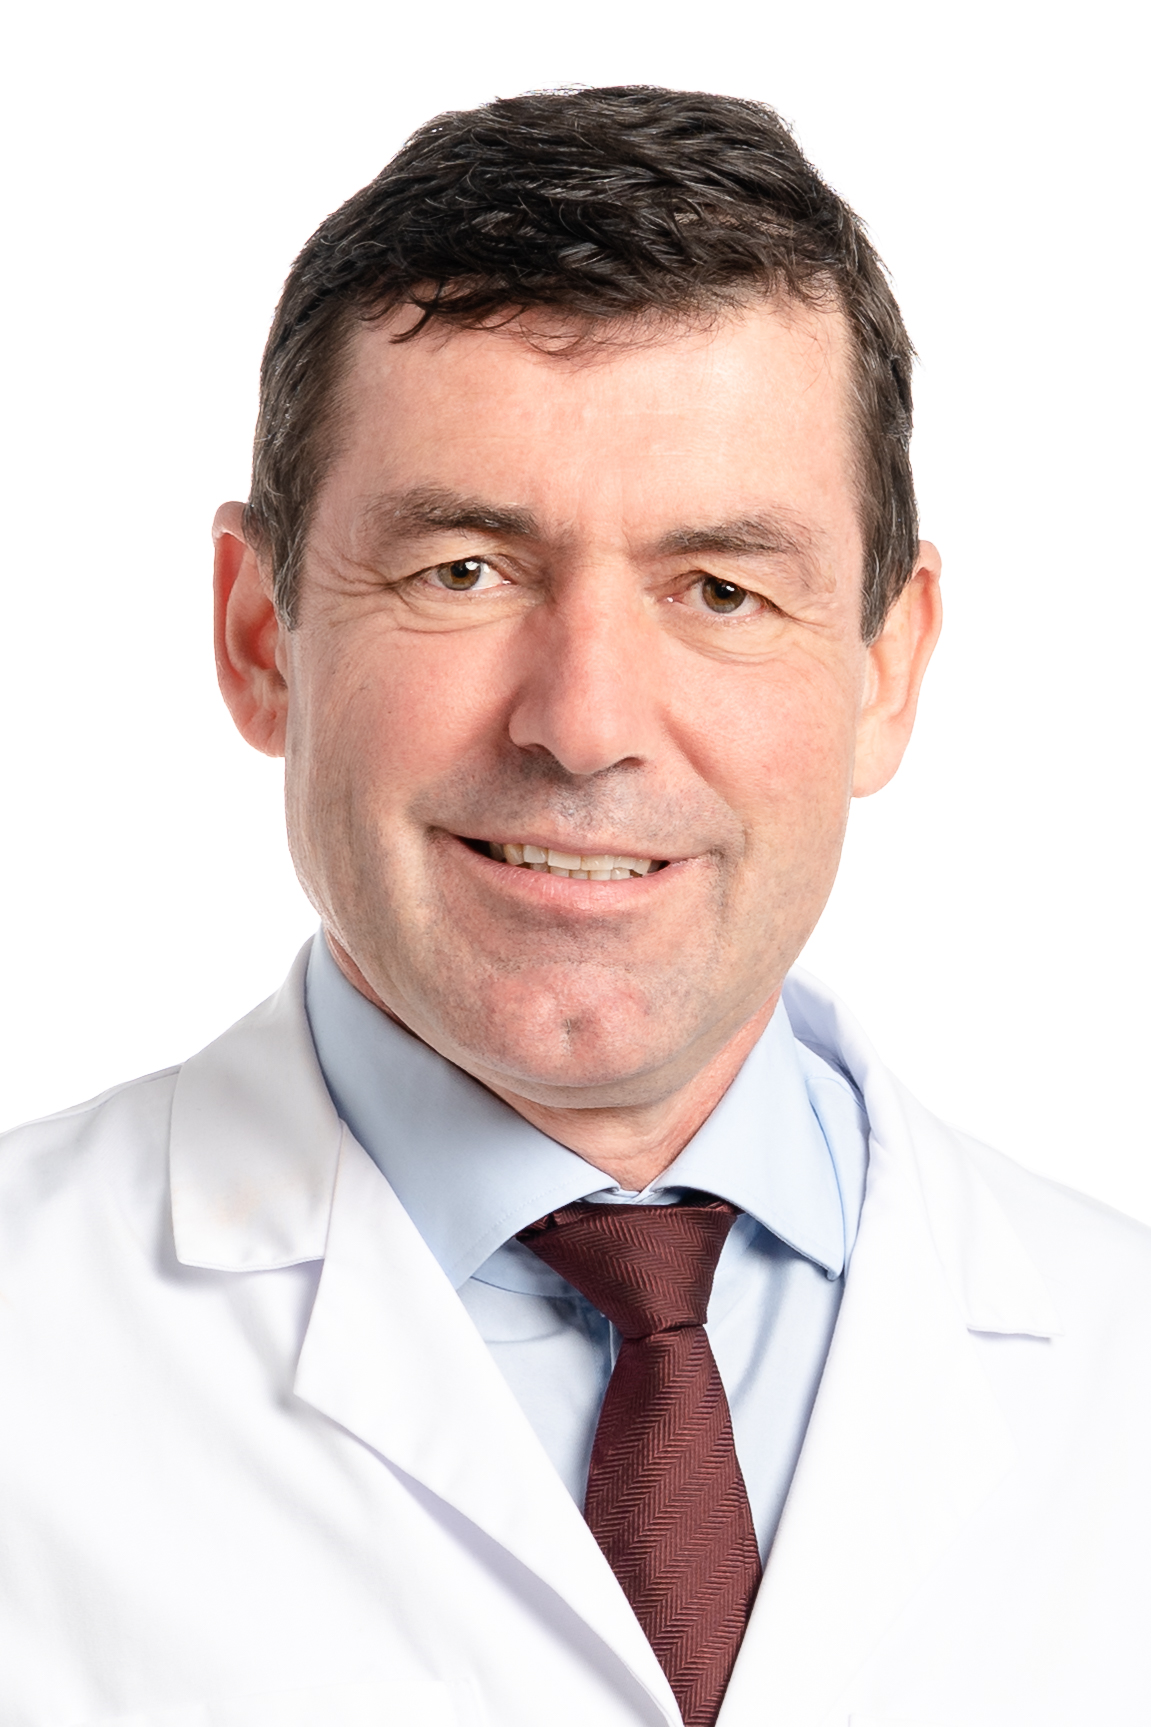 Prof. Dr. med. Daniel Candinas, Universitätsklinik für Viszerale Chirurgie und Medizin, Inselspital, Universitätsspital Bern, und Department for BioMedical Research, Universität Bern.